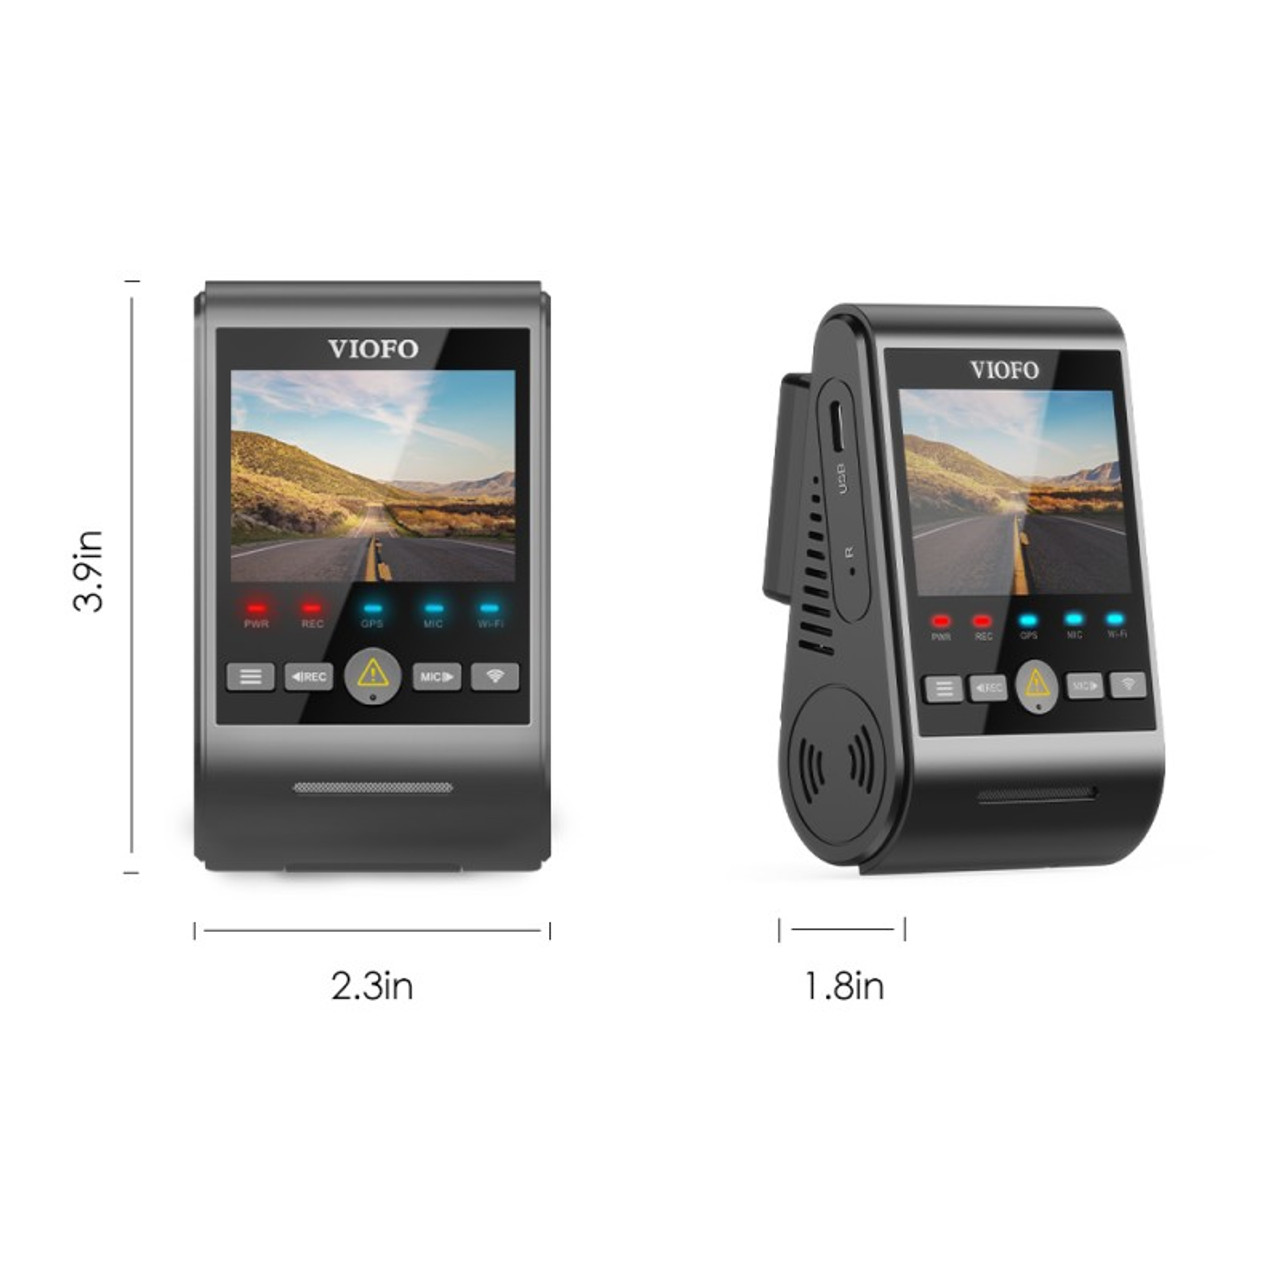 VIOFO A229 Duo 2K QHD 2-Channel Dash Cam with GPS — BlackboxMyCar